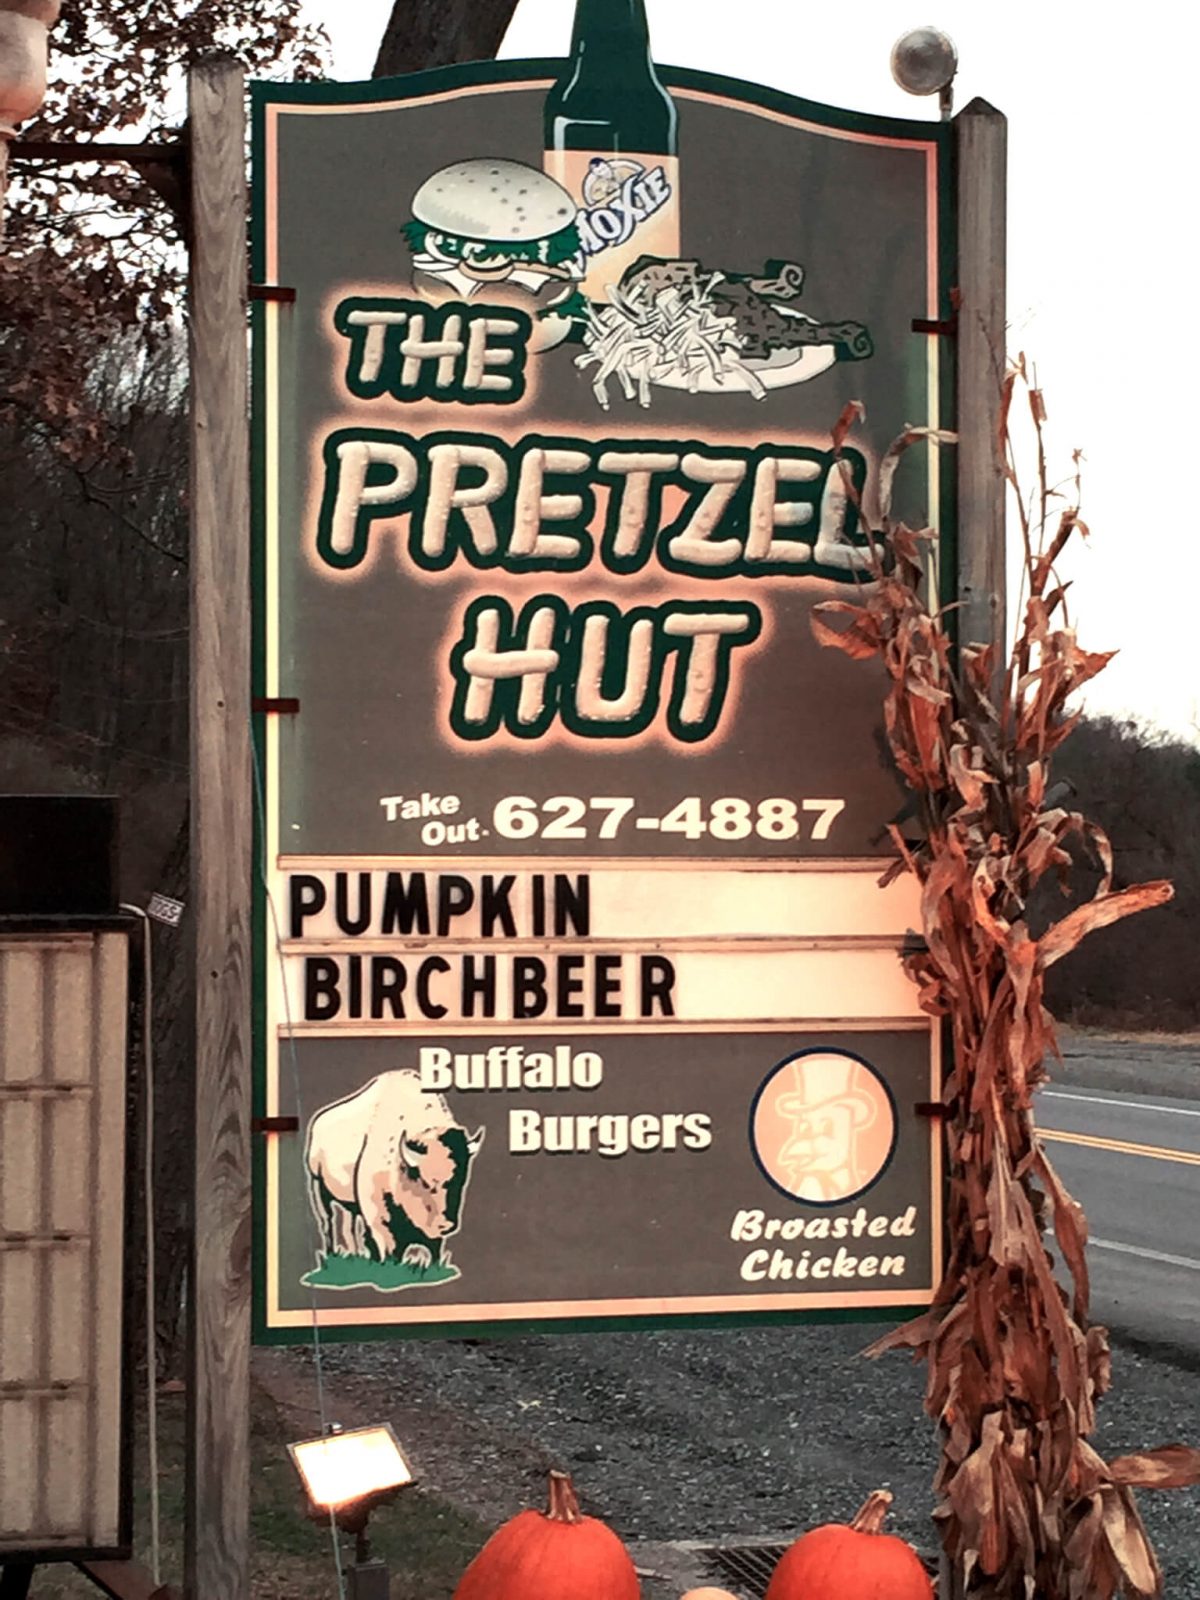 The Pretzel Hut